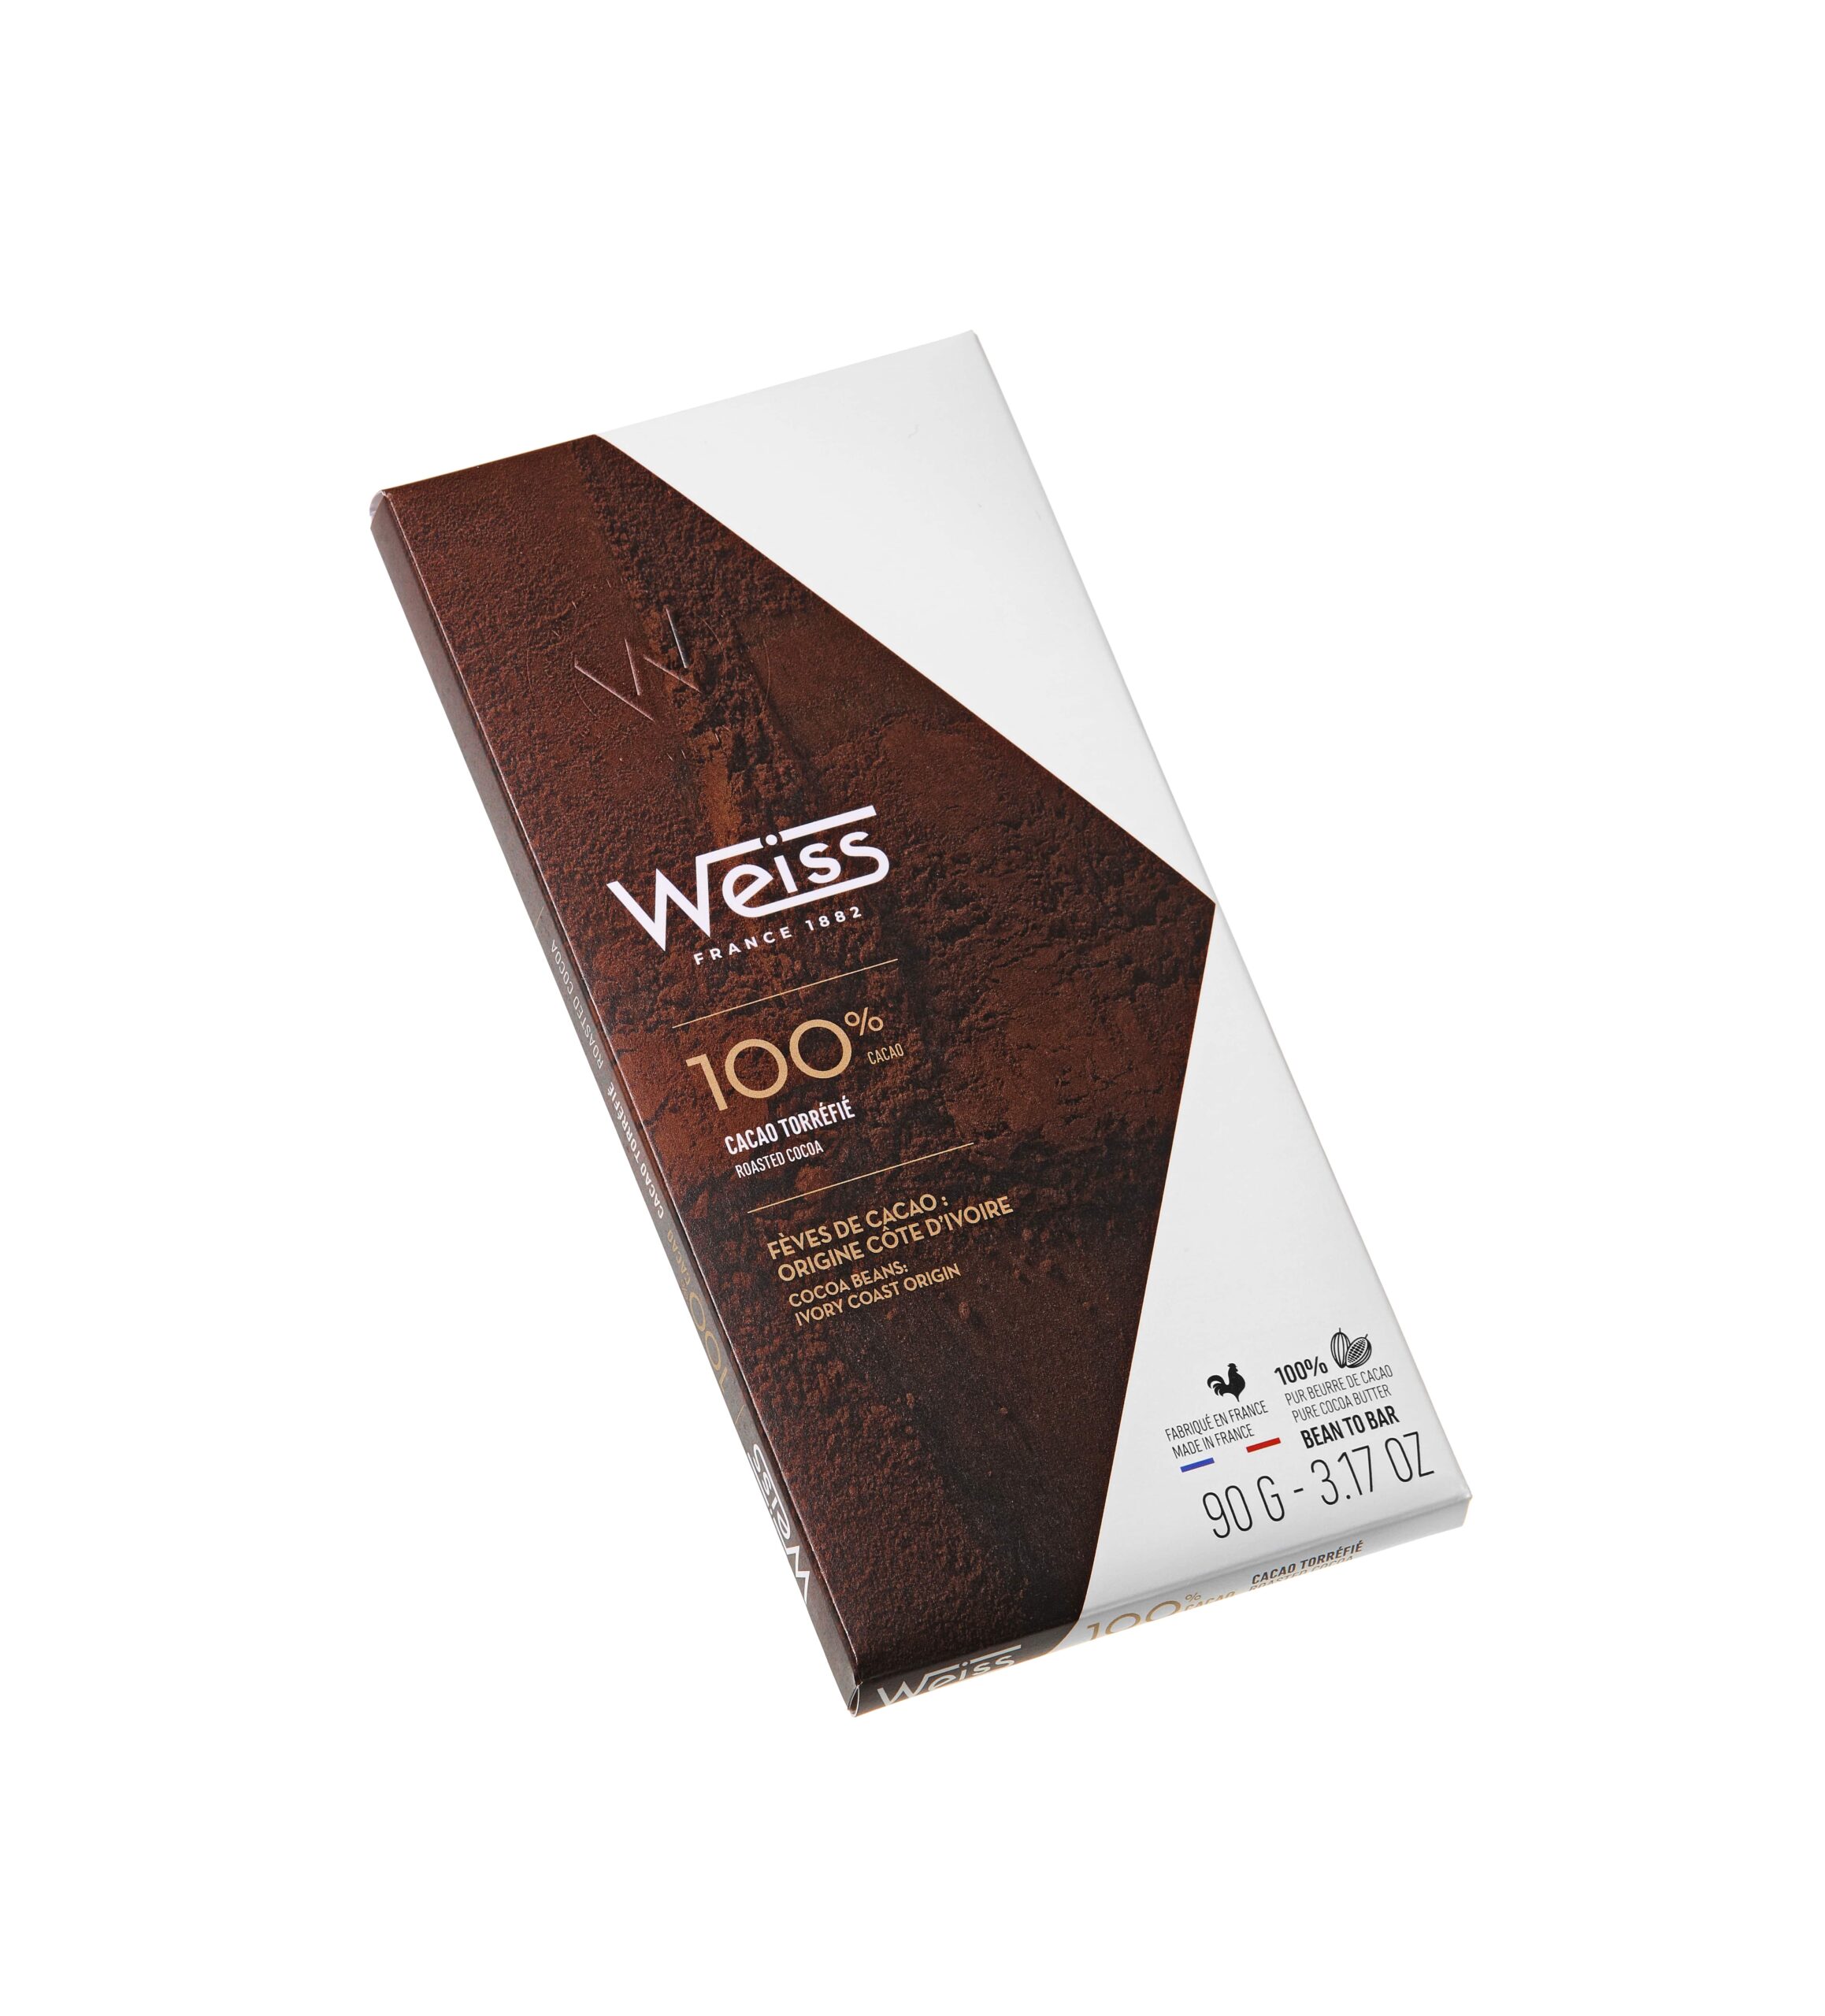 https://etsdupleix.com/app/uploads/2020/09/Weiss_100-cacao-min-scaled.jpg